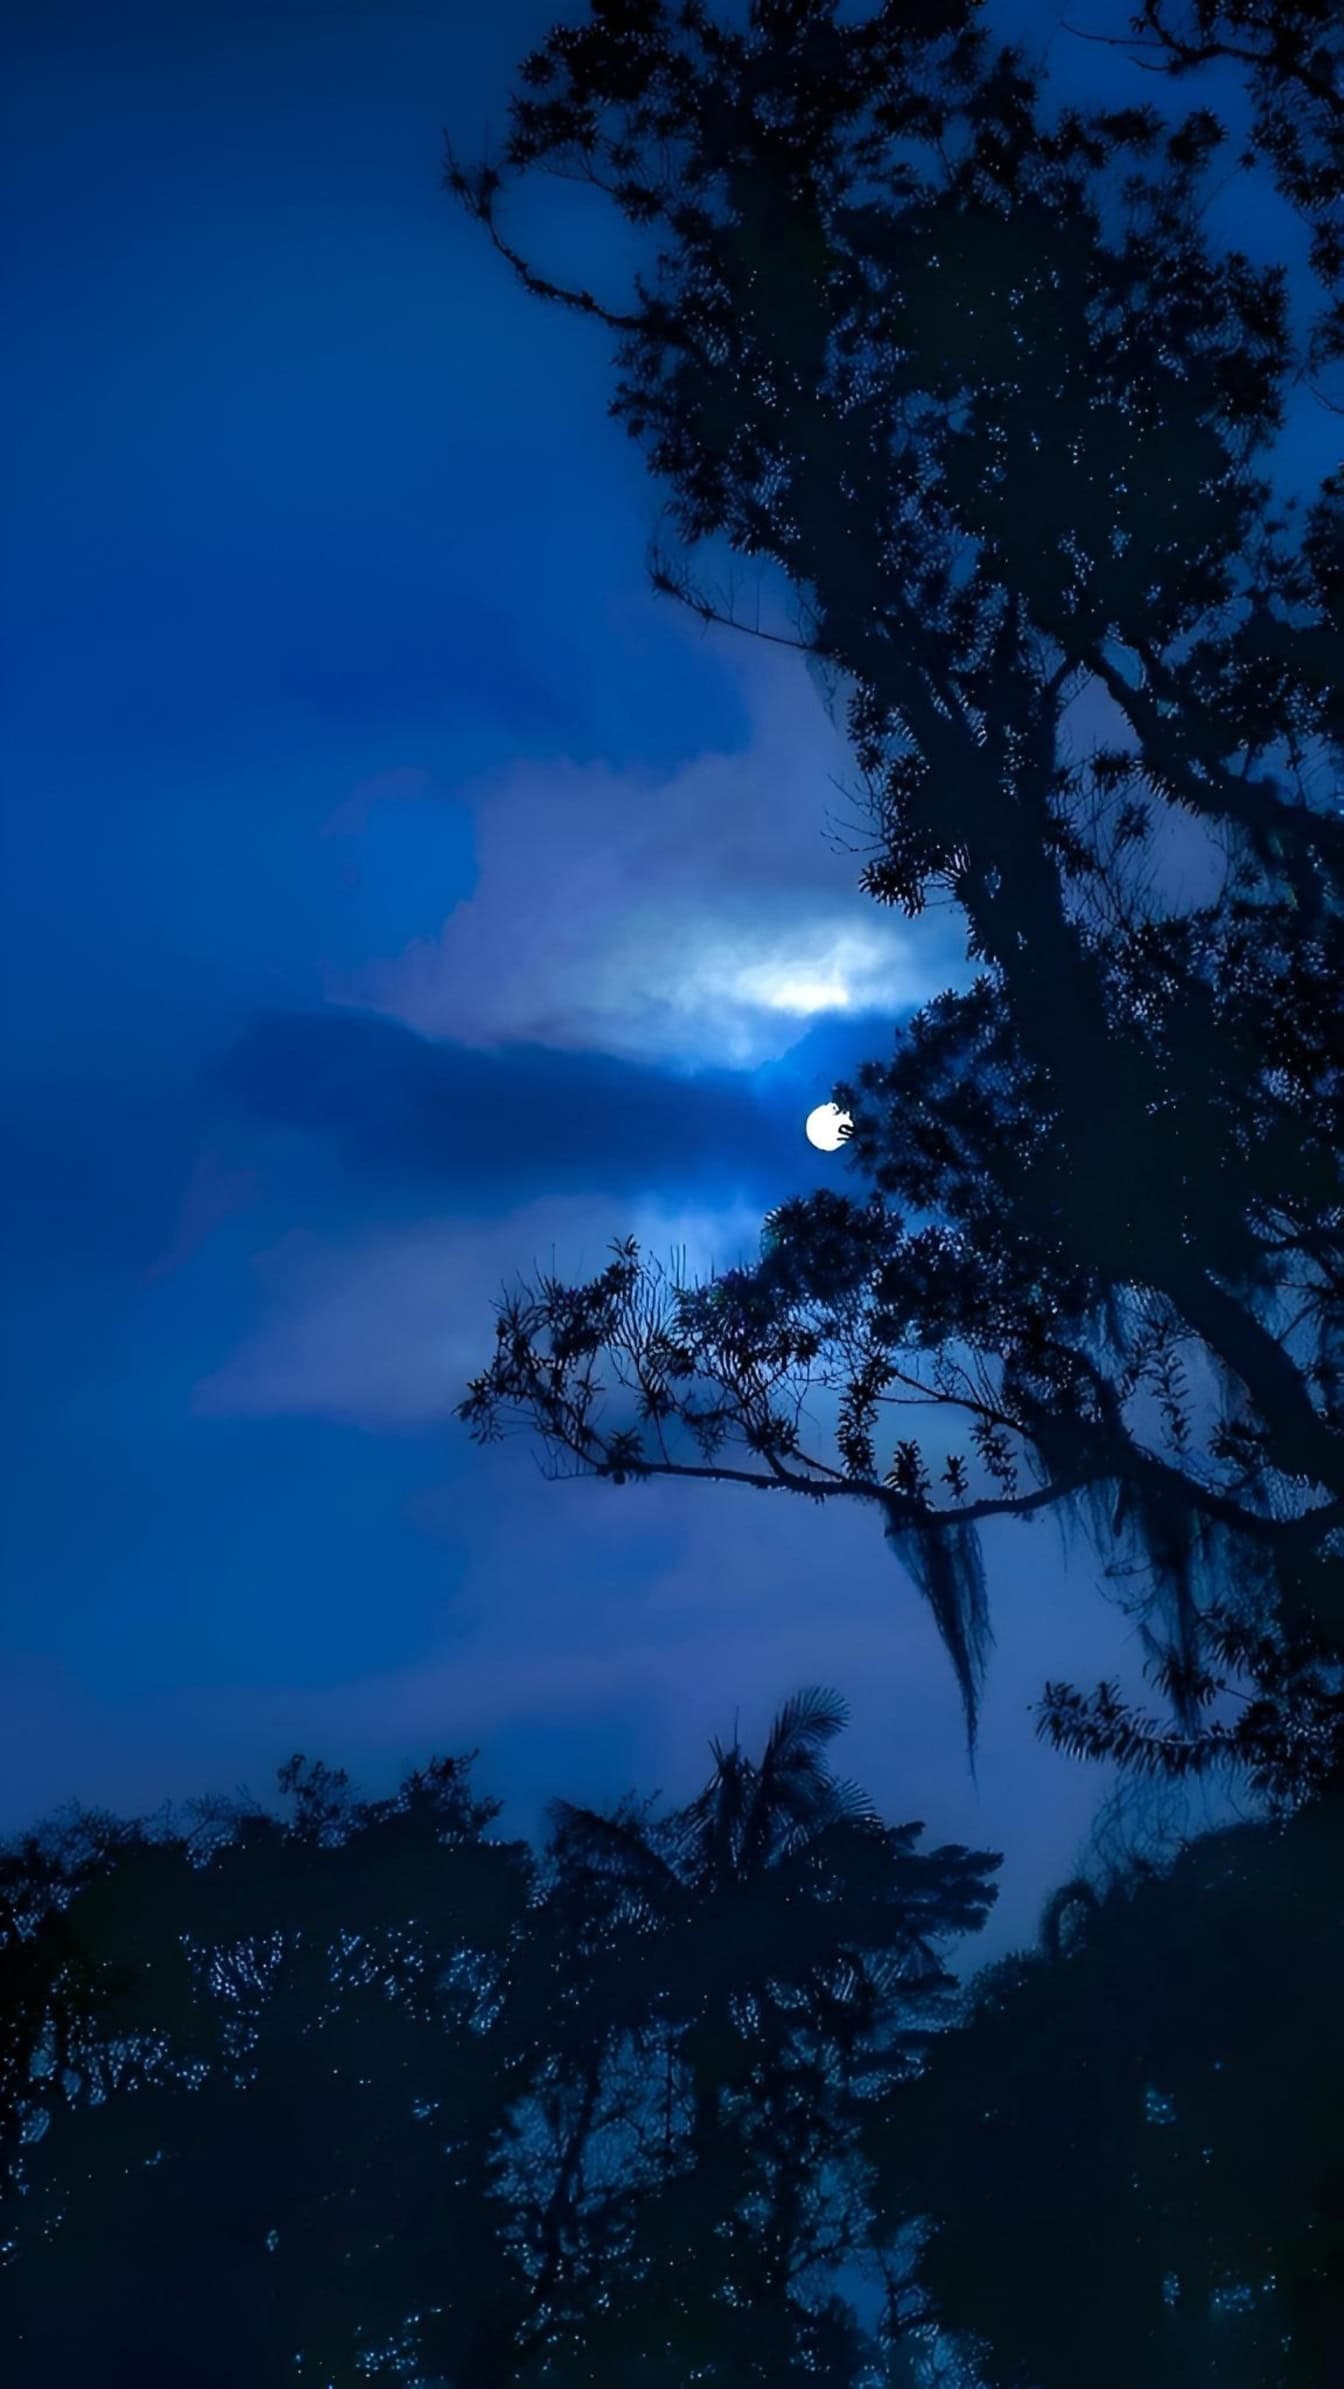 Một hình bóng của một cái cây trên ánh trăng, một cảnh trăng với một mặt trăng trên bầu trời đêm xanh